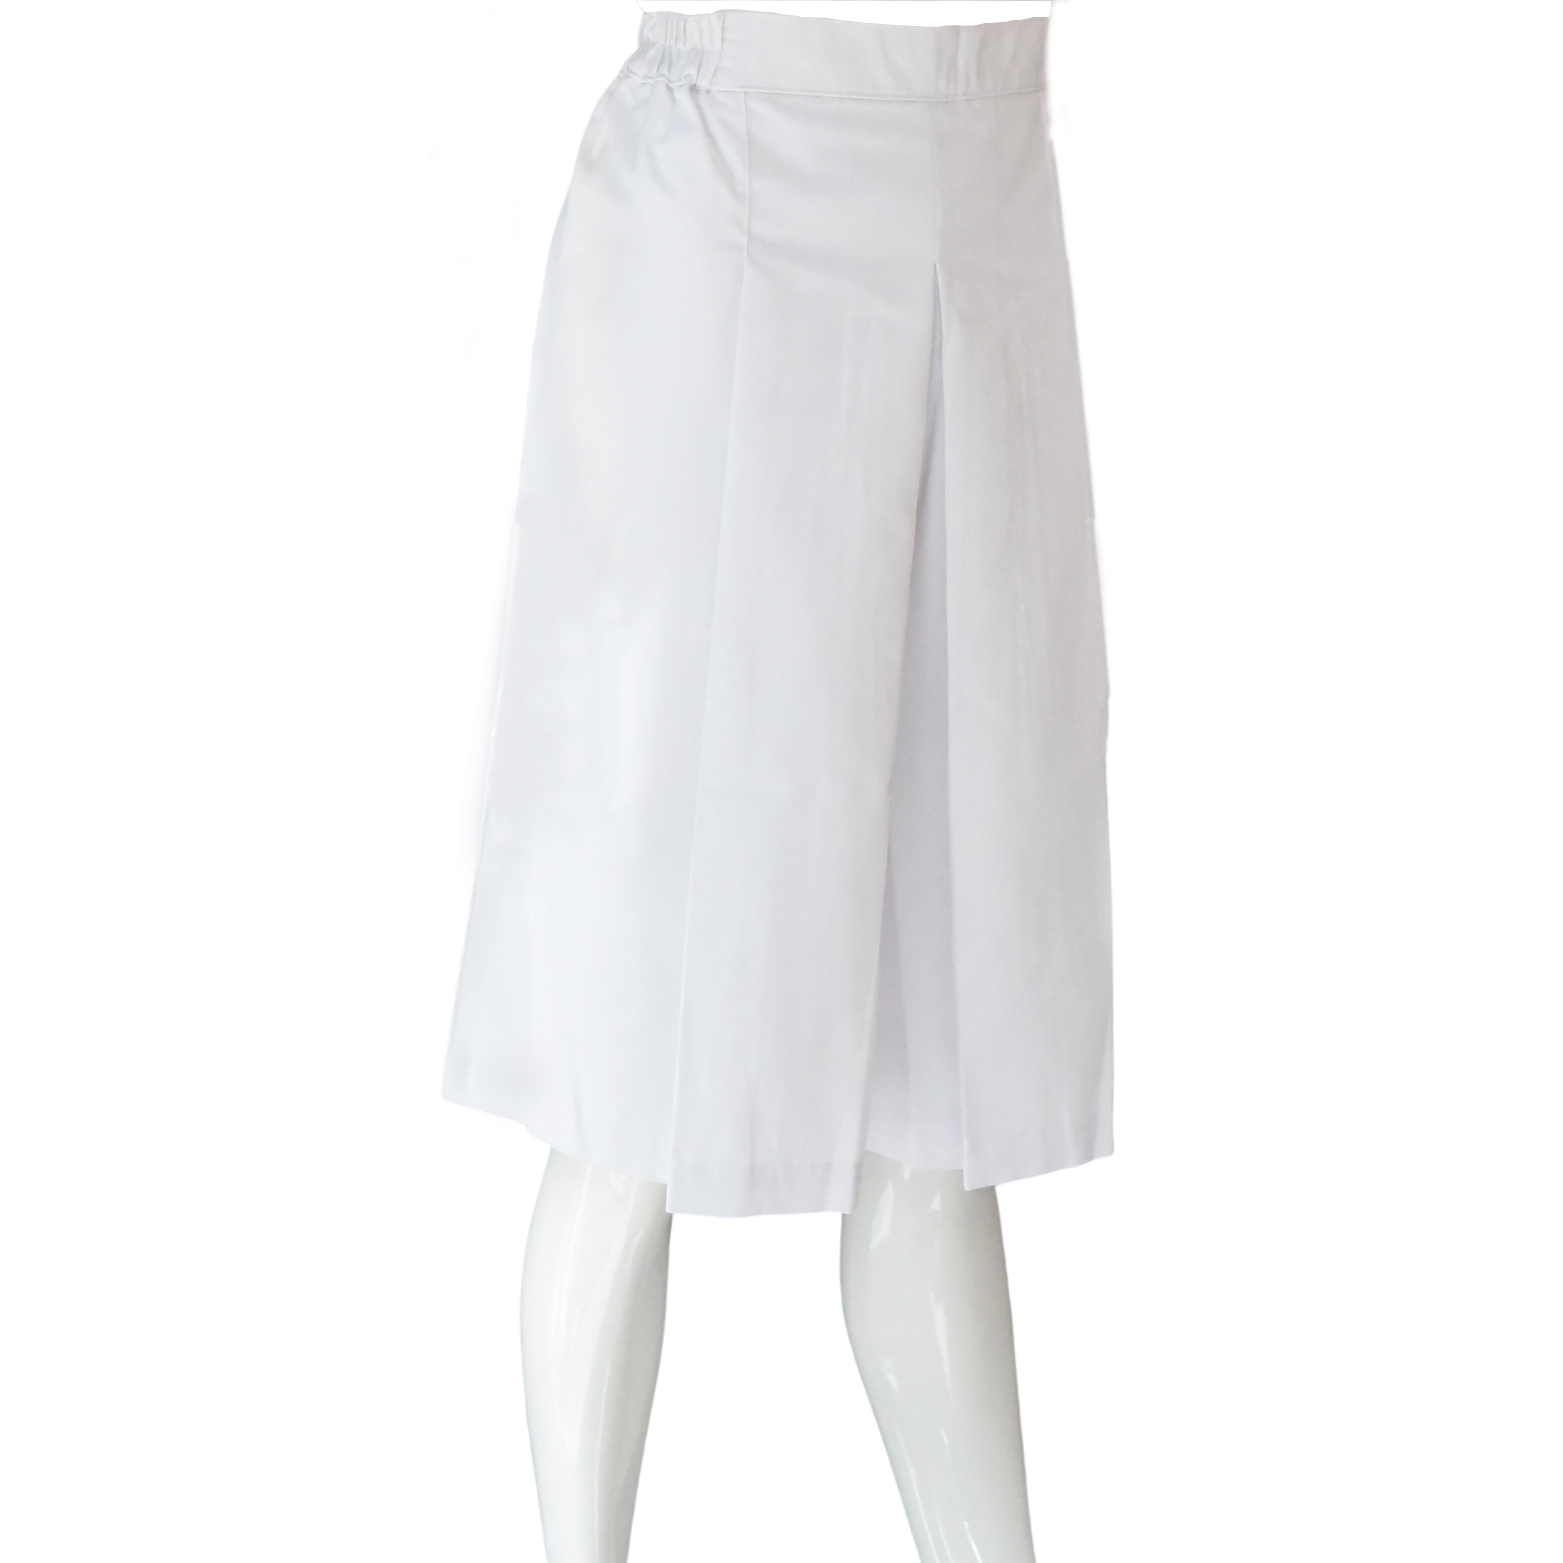 Divider Skirt - Globe Uniforms